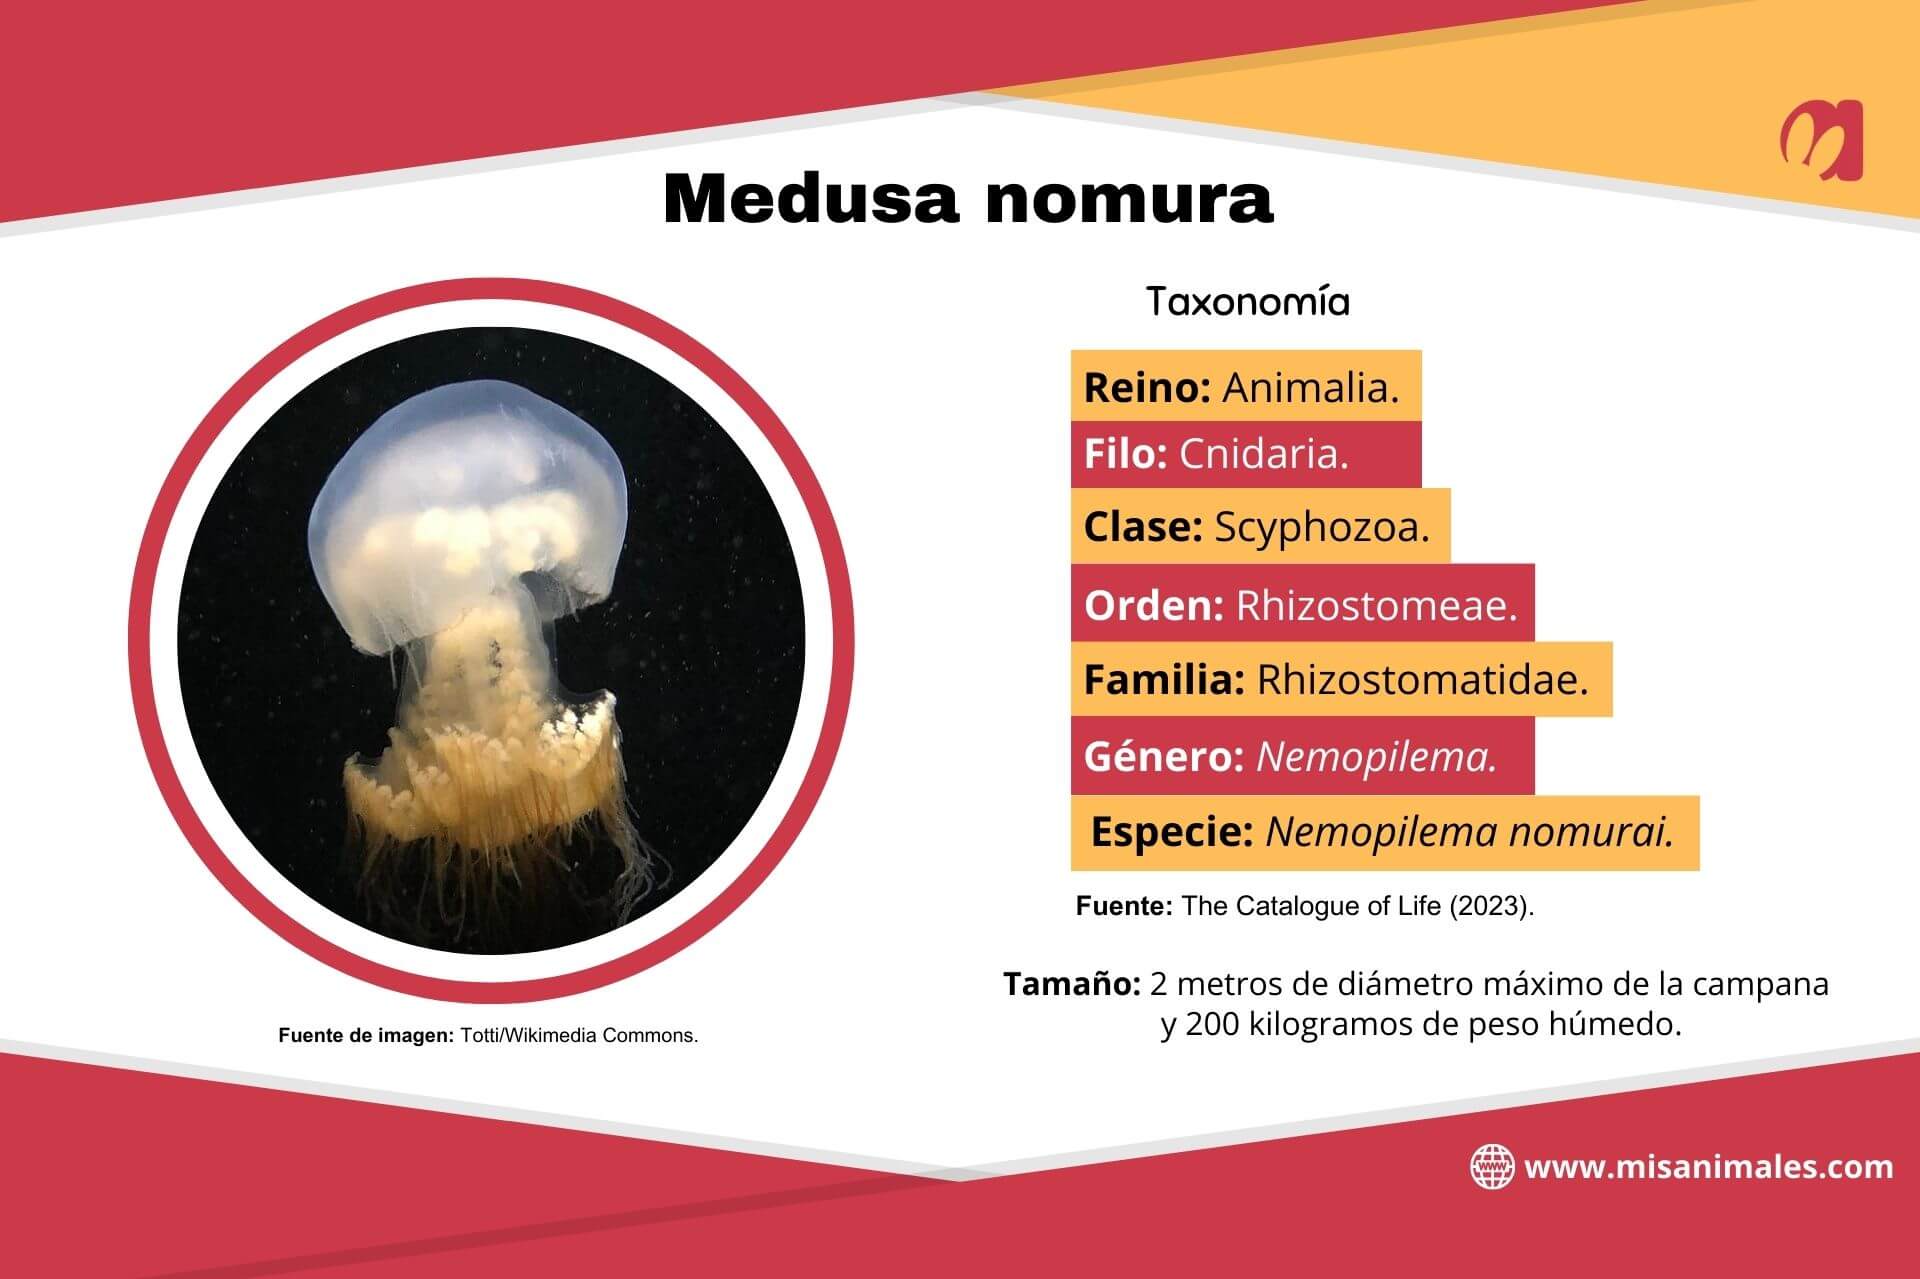 Ficha sobre la taxonomía de la medusa nomura y su tamaño, con foto. 